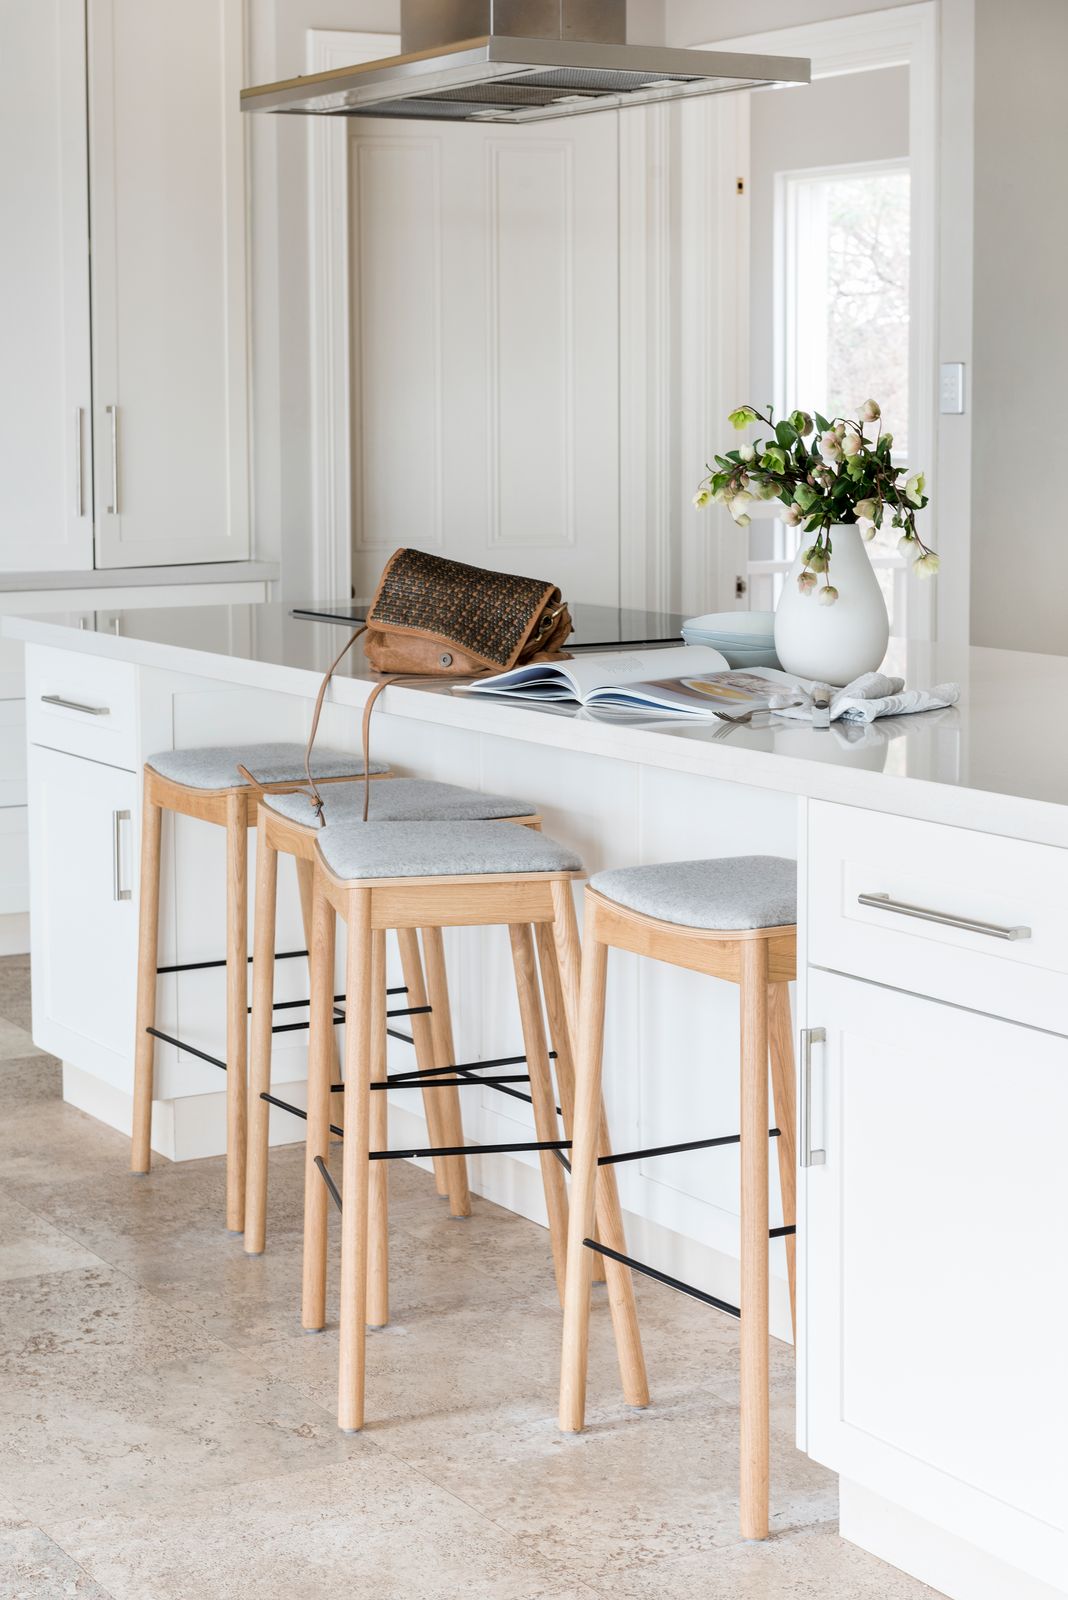 Berkley Interiors_Swanbourne_kitchen bench